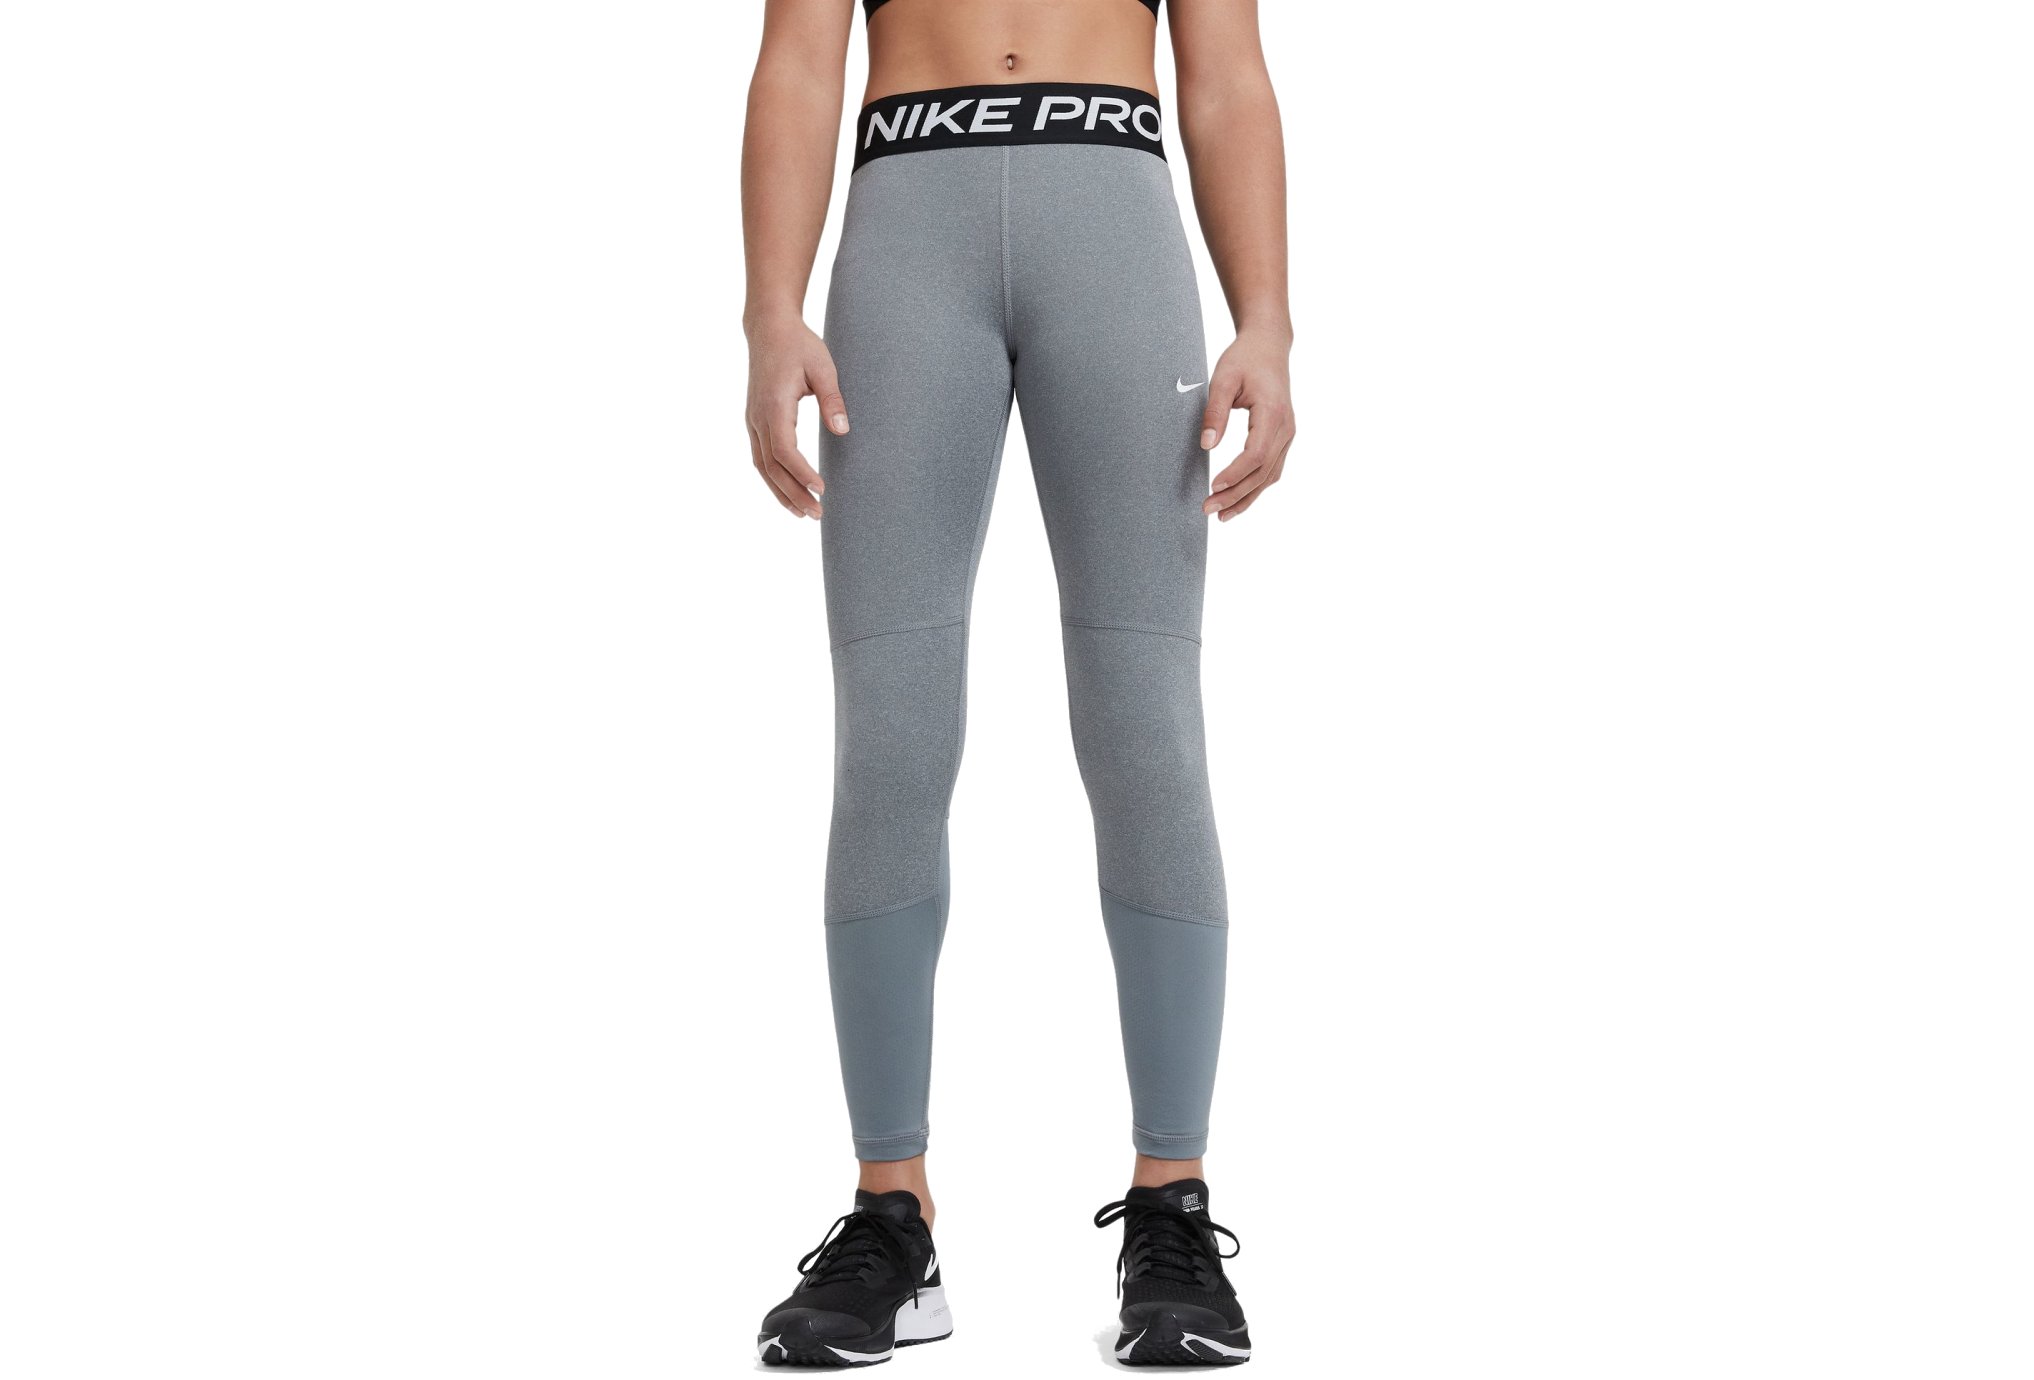 Nike Pro Fille vêtement running femme